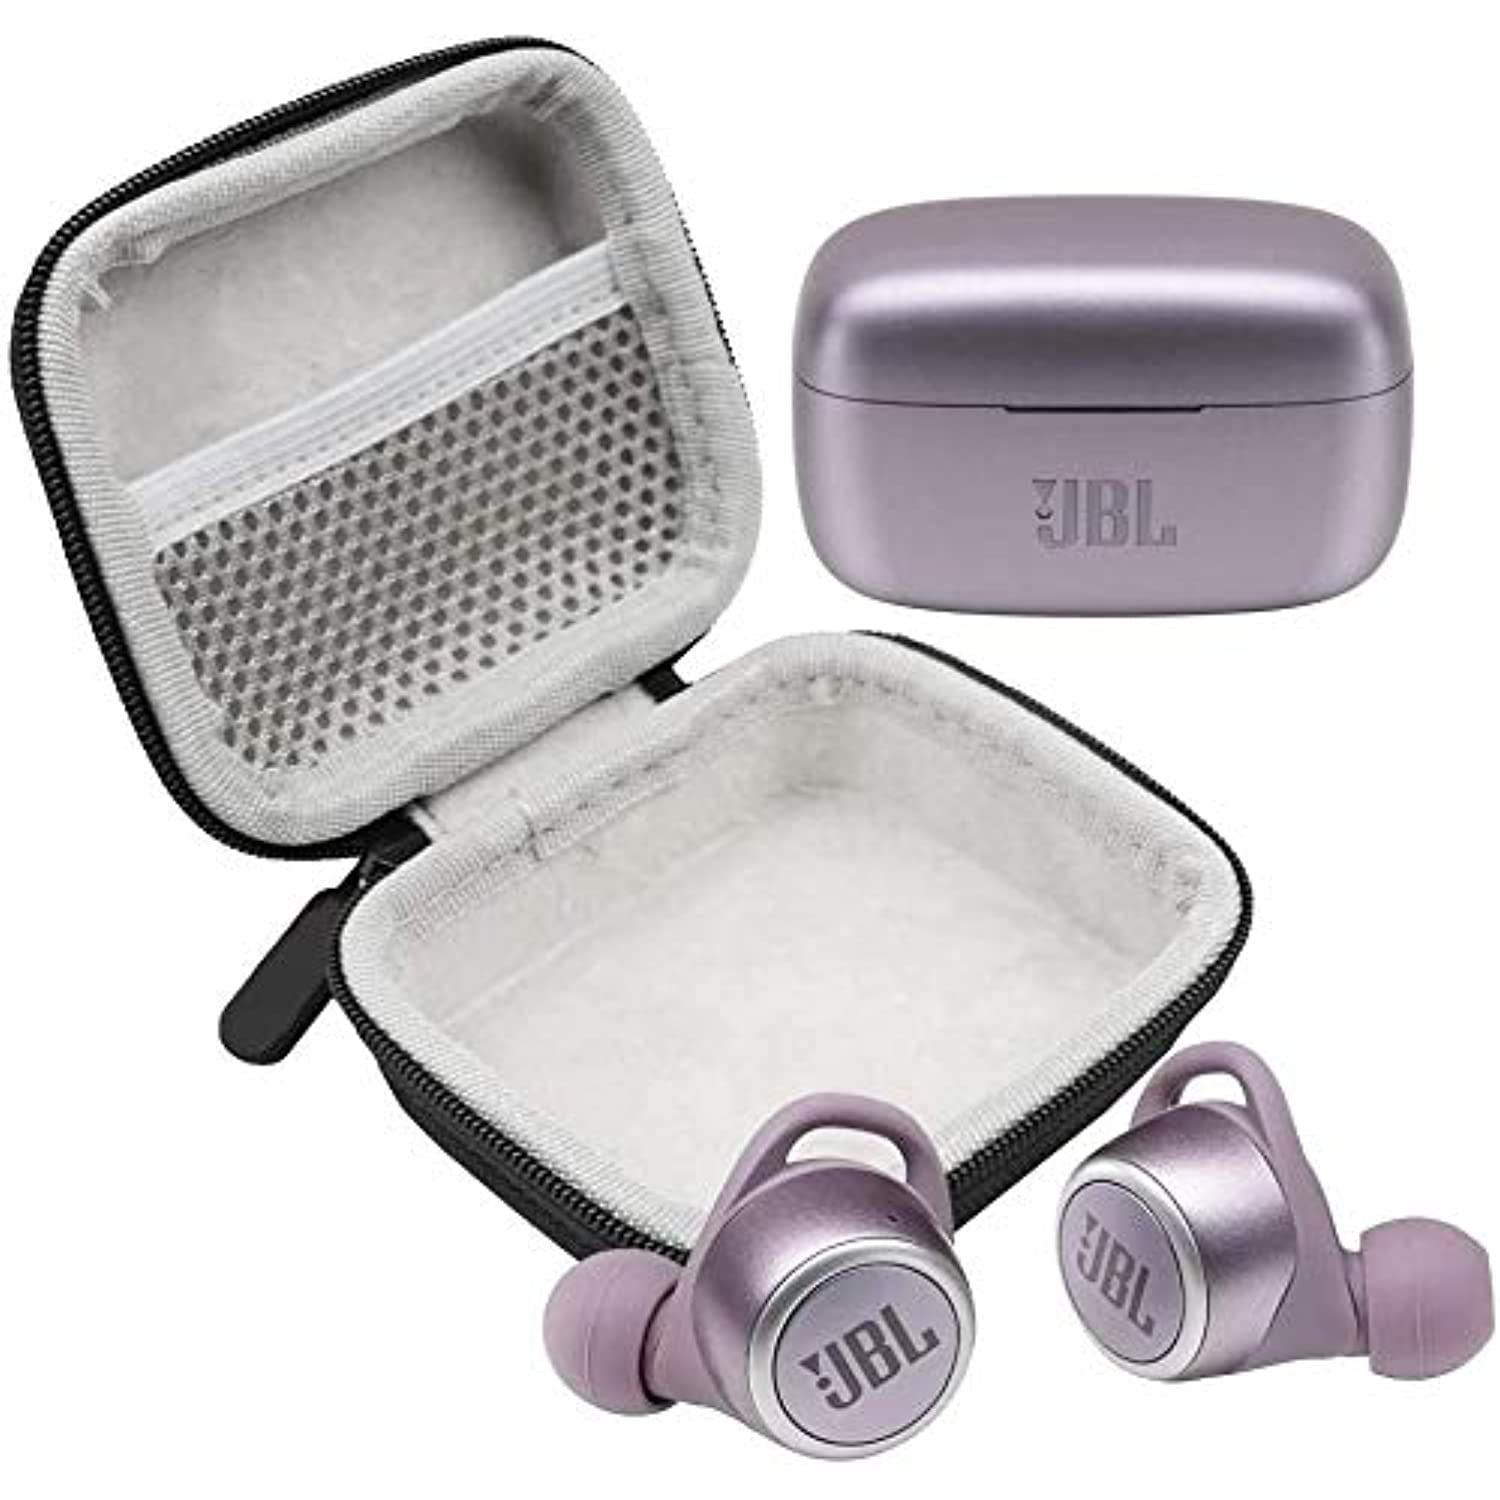 JBL Under Armour Flash True Wireless in-Ear Sport Headphones On 